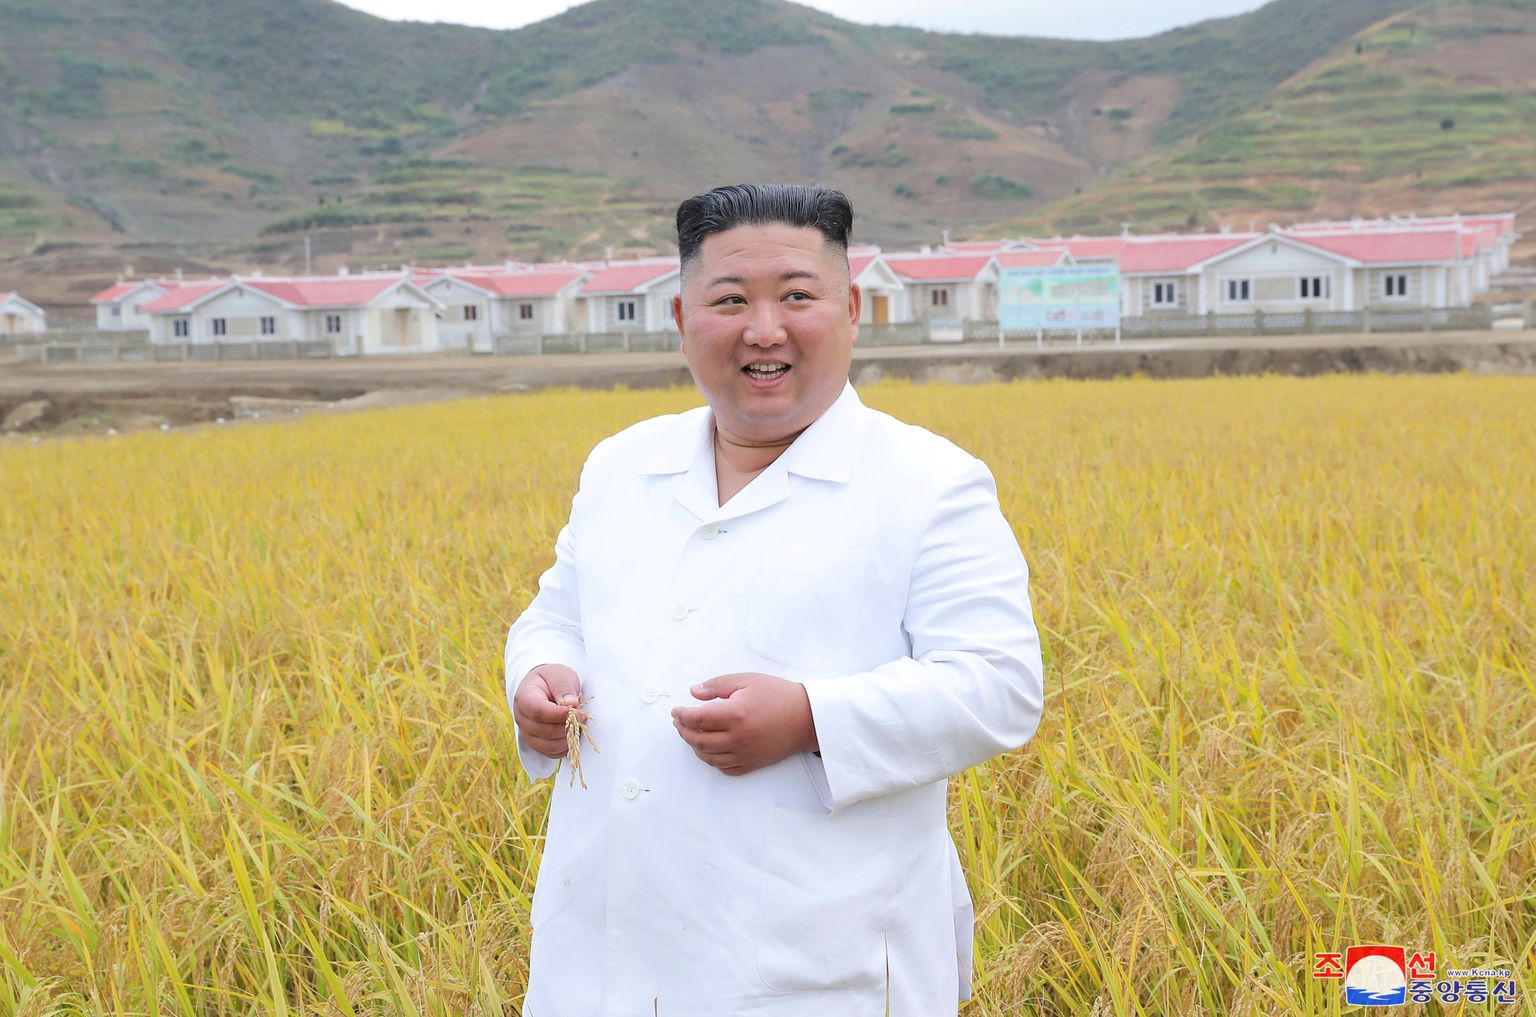 Põhja-Korea liider Kim Jong-un Kimhwa maakonnas inspekteerimas uusehitisi ja põlde. Põhja-Korea uudisteagentuut KCNA avaldas liidrist foto 1. oktoobril 2020, kuid ei ole teada, millal ta külaskäik toimus